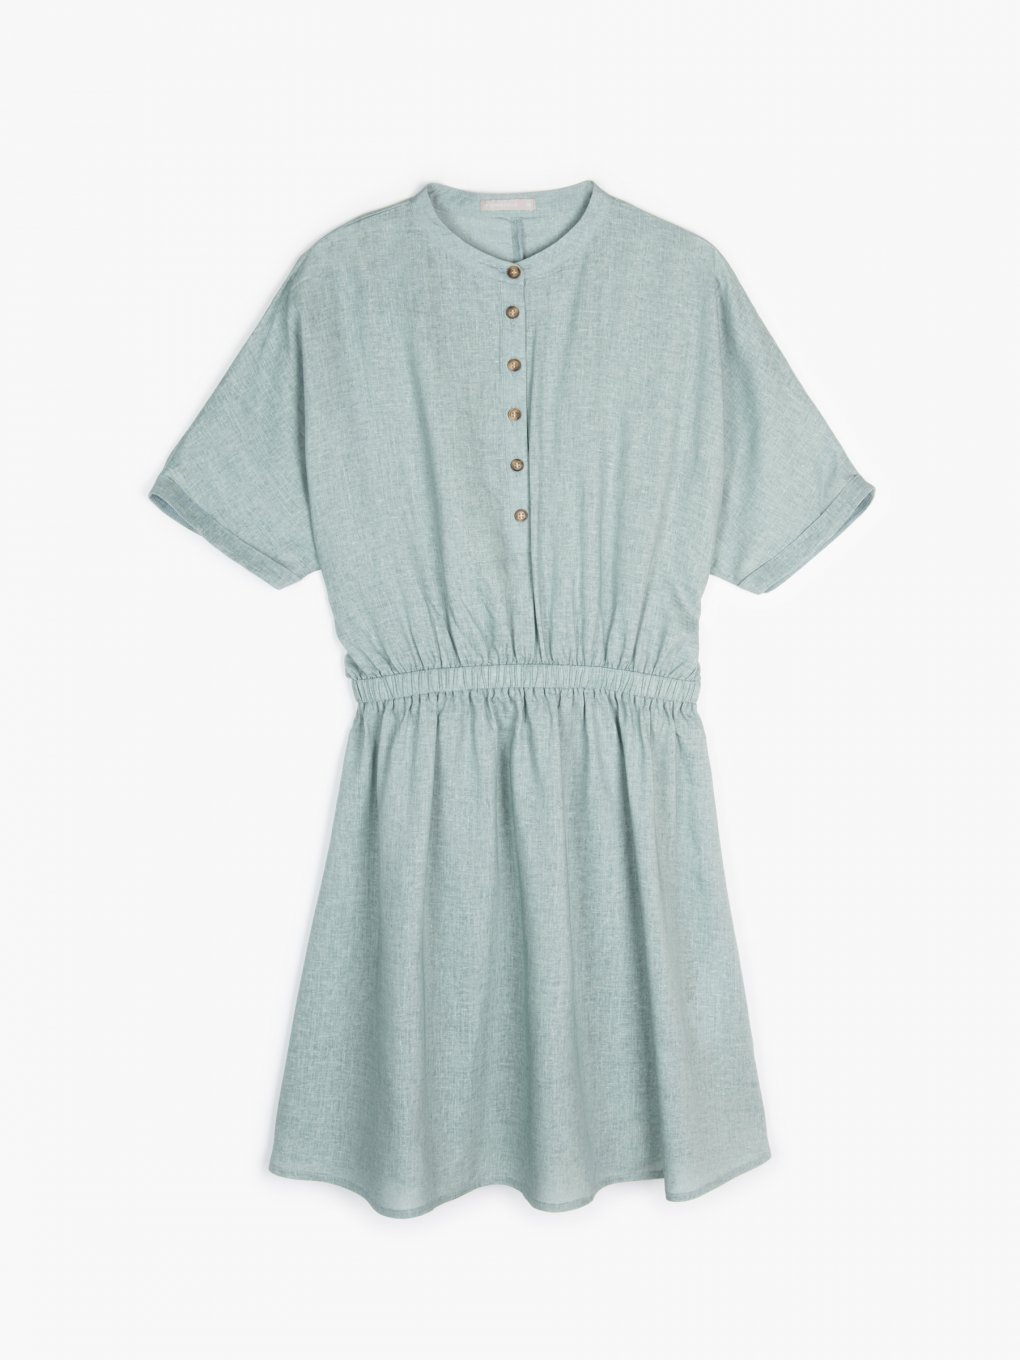 Linen blend shirt dress